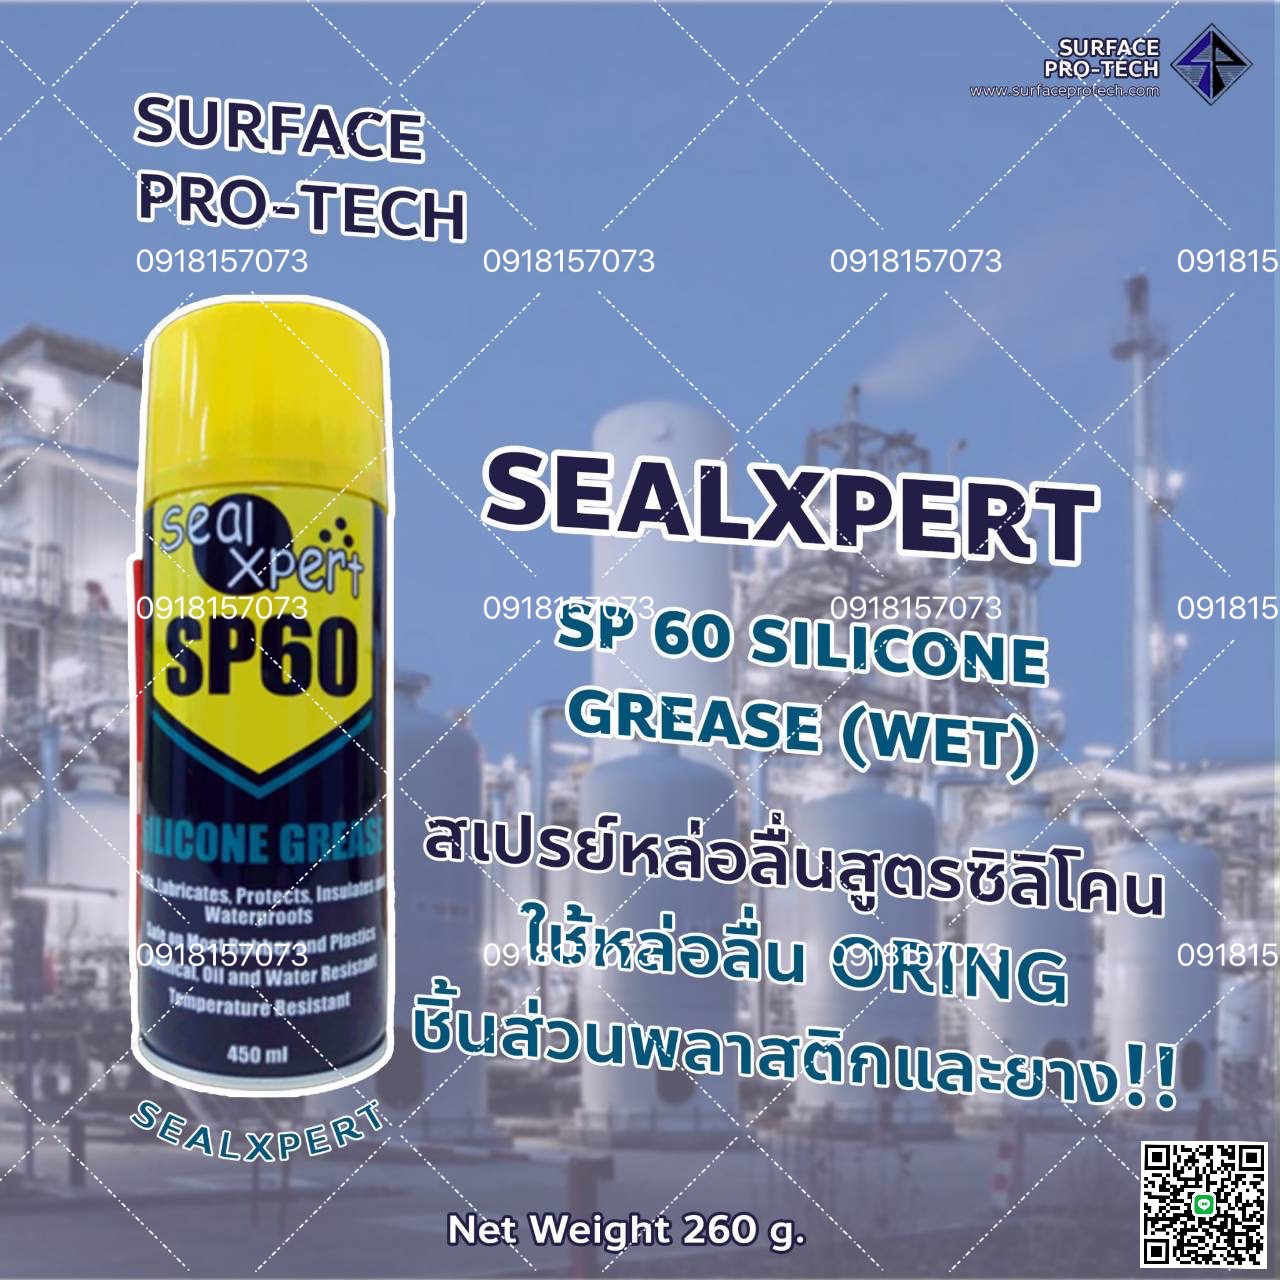 SealXpert SP60 SILICONE GREASE (WET) สเปรย์หล่อลื่นจาระบีซิลิโคน ใช้หล่อลื่น Oring ชิ้นส่วนพลาสติกและยาง >>สอบถามราคาพิเศษได้ที่0918157073ค่ะ<< รูปที่ 1